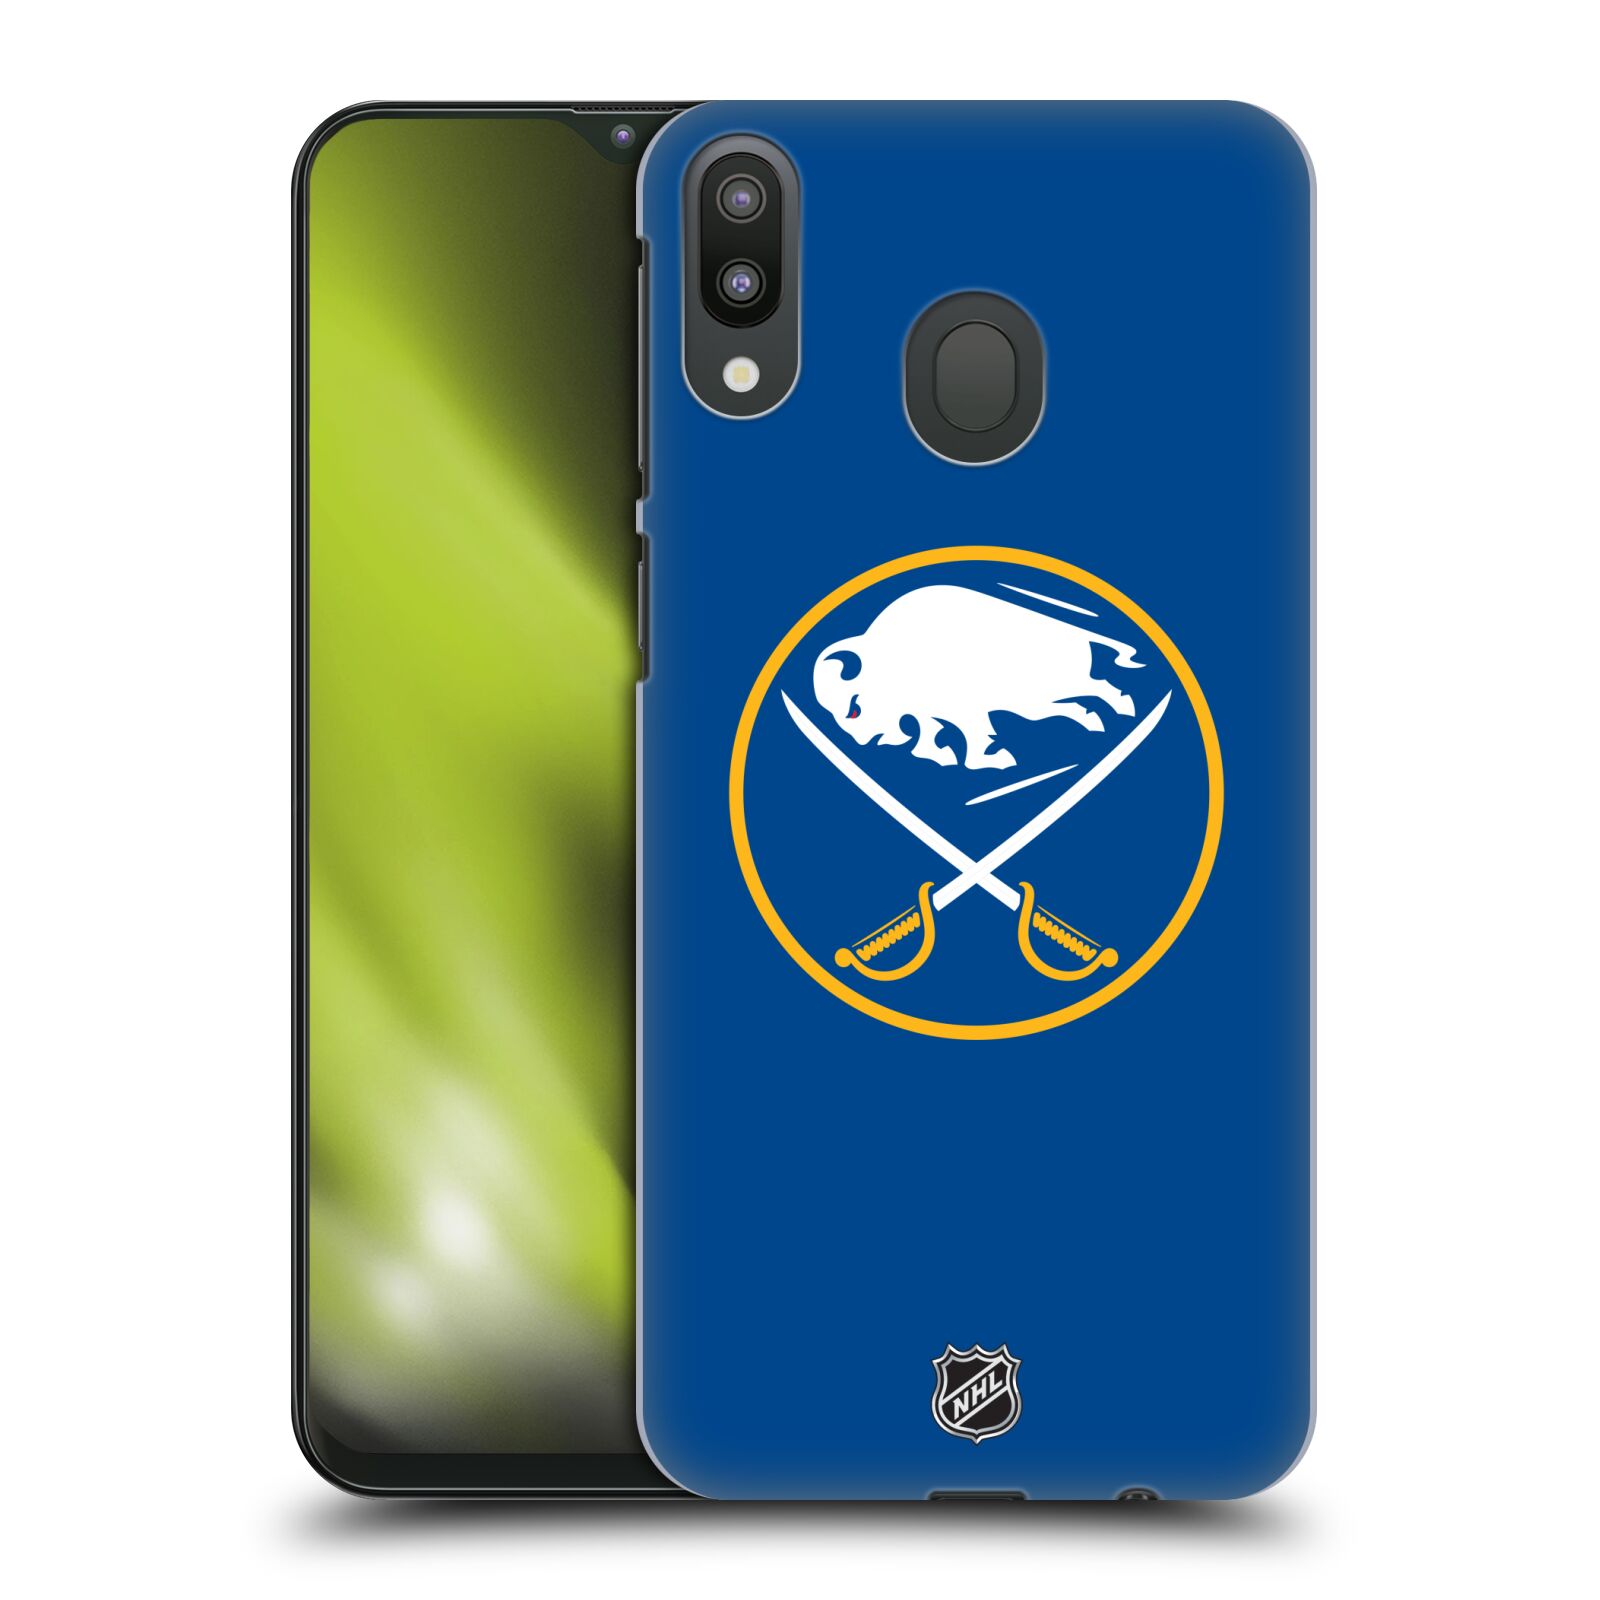 Pouzdro na mobil Samsung Galaxy M20 - HEAD CASE - Hokej NHL - Buffalo Sabres - modré pozadí